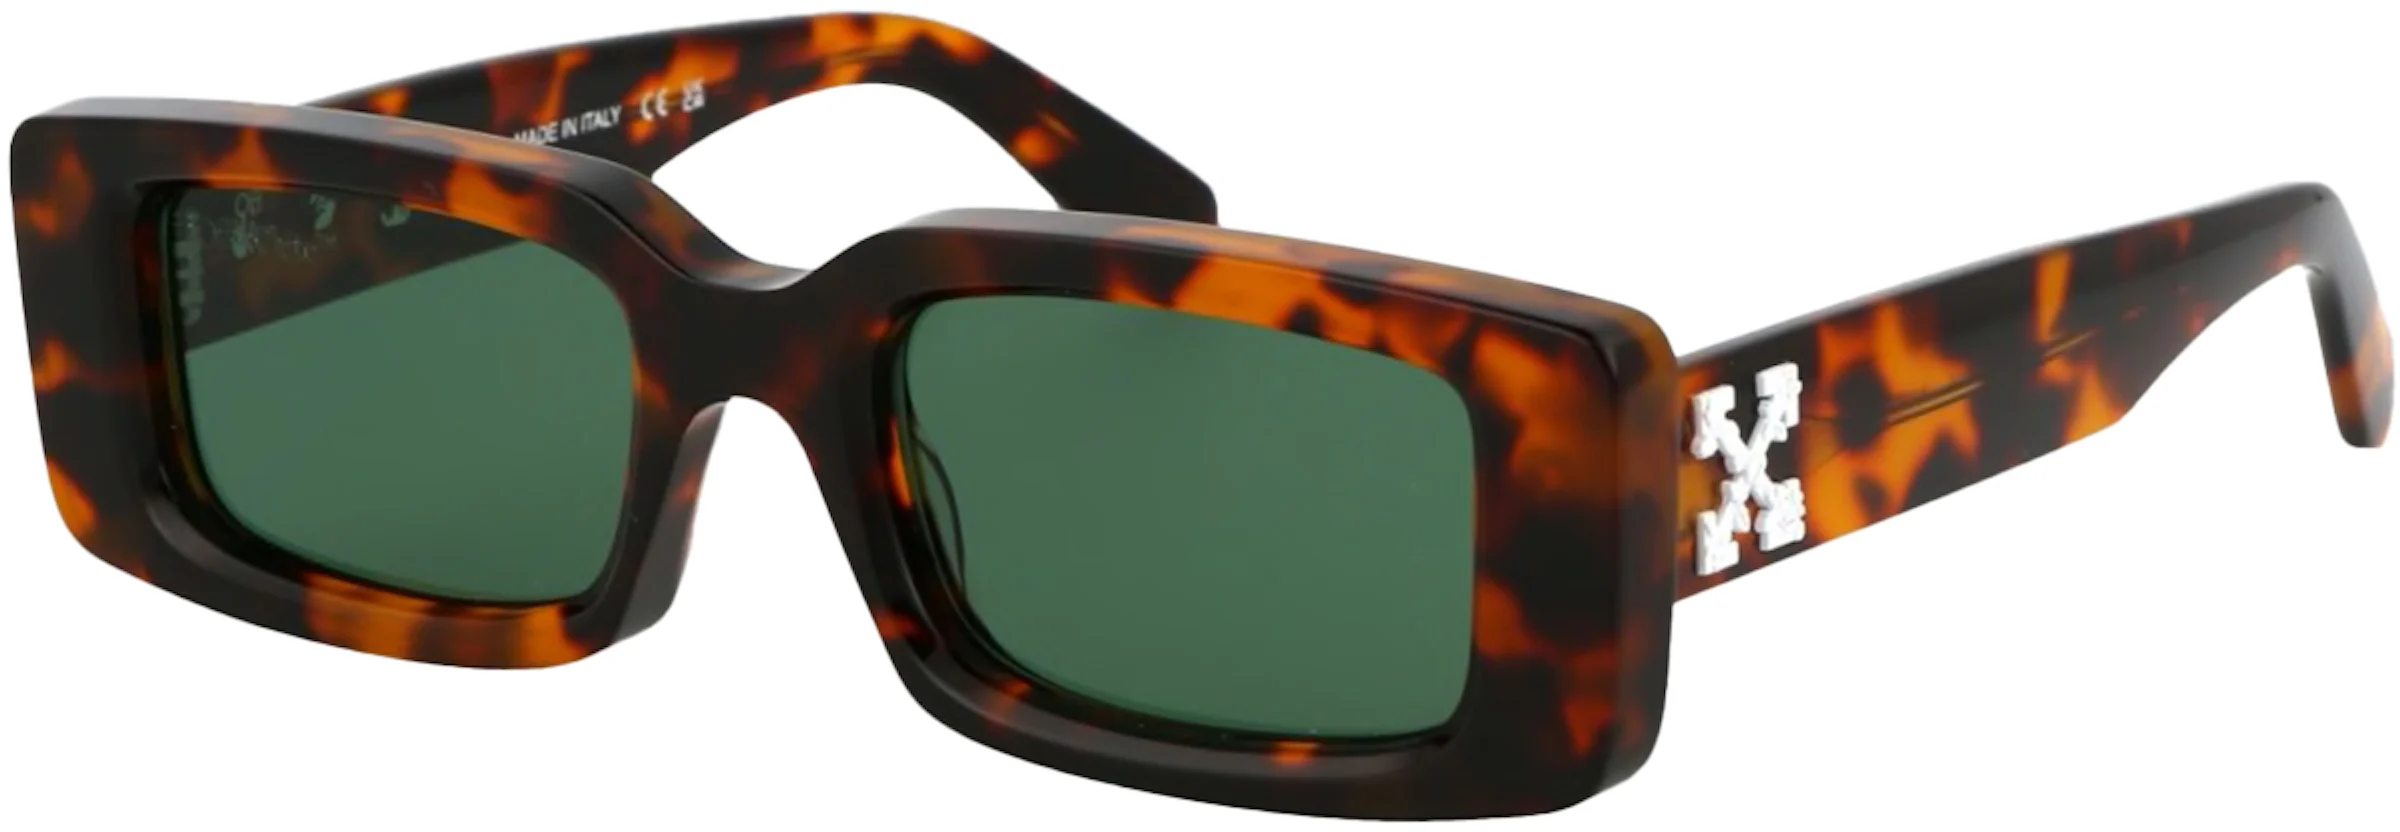 Designer Square Black Tortoise Frame White Sunglasses for Men and Women